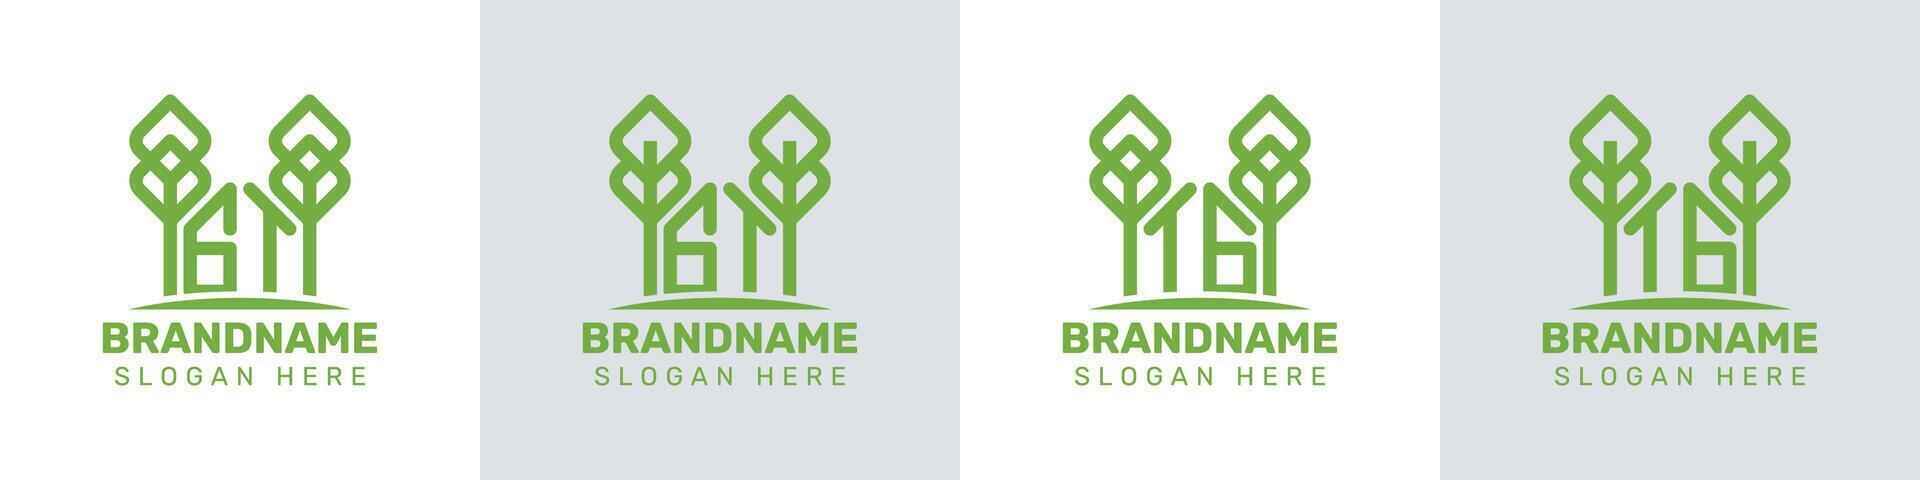 Briefe gt und tg Gewächshaus Logo, zum Geschäft verbunden zu Pflanze mit gt oder tg Initialen vektor